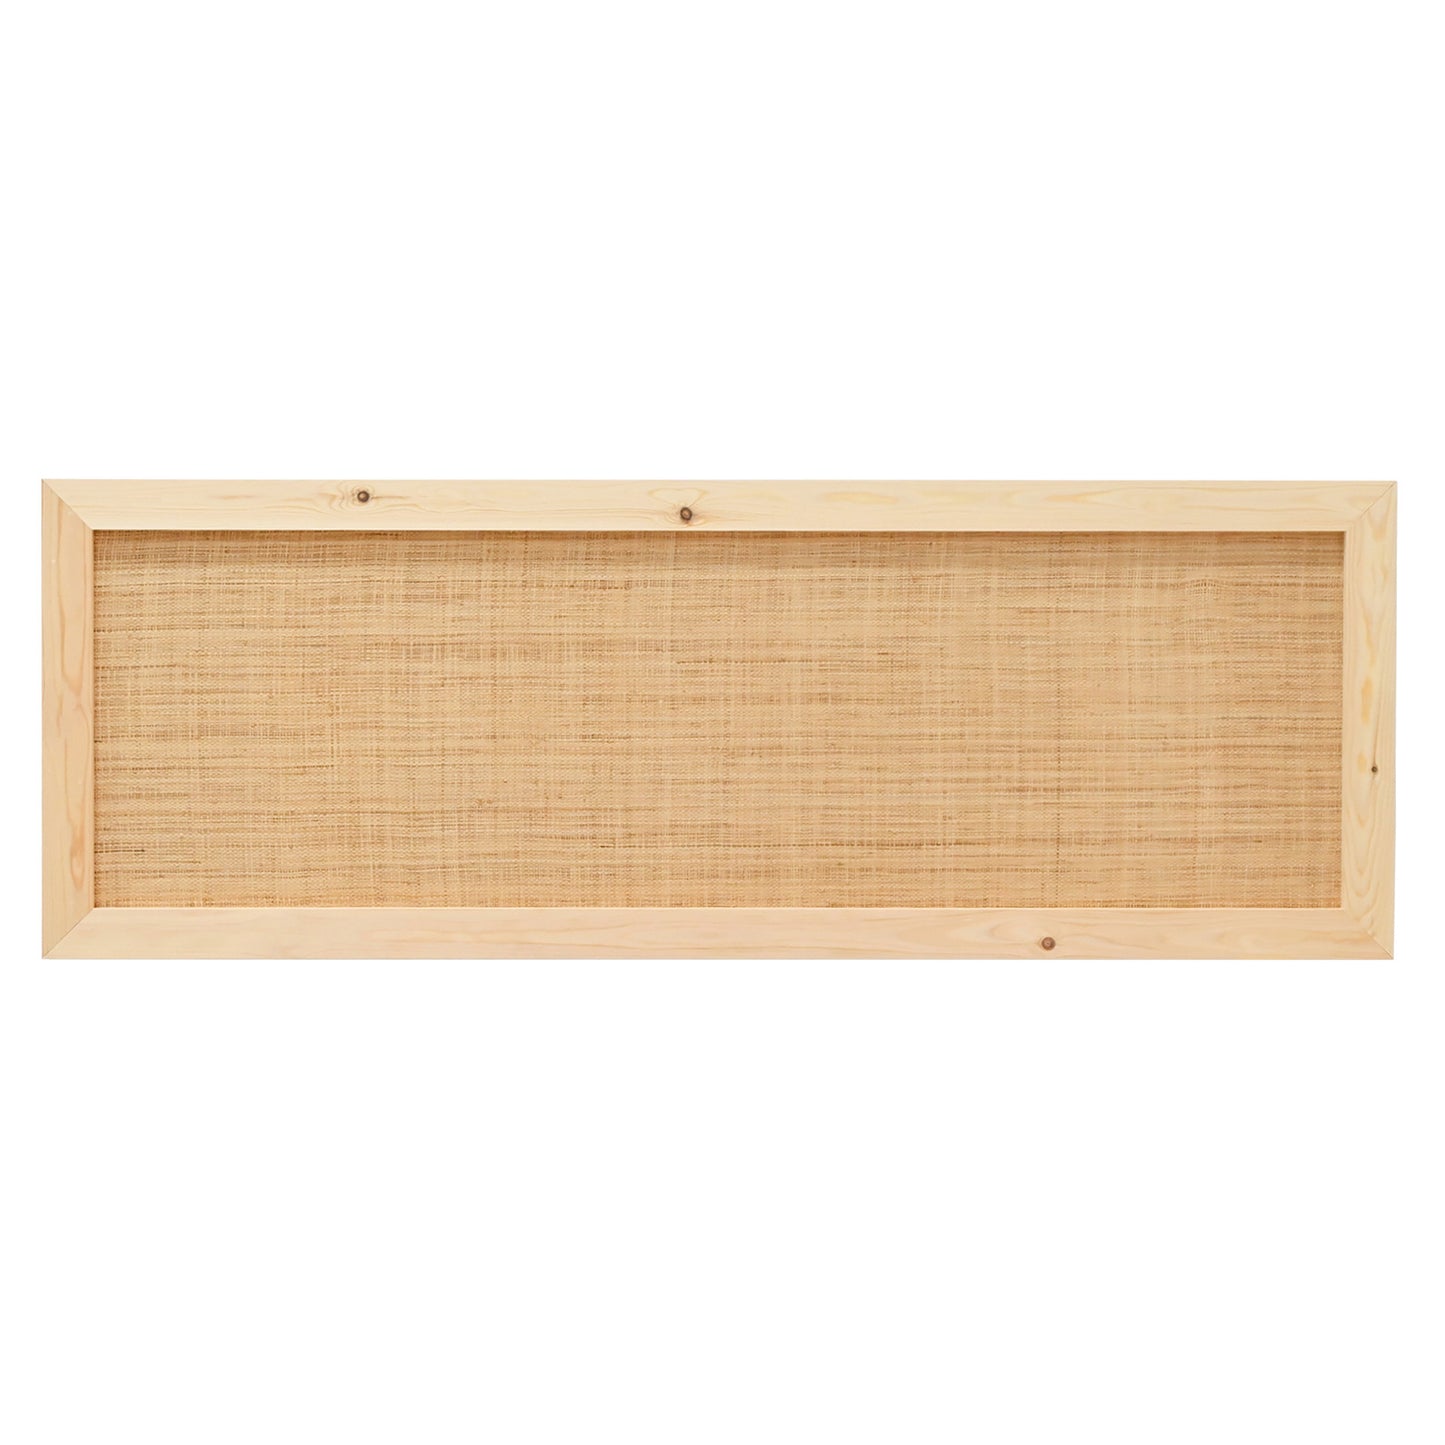 Cabecero de madera maciza y rafia en tono natural de 180x60cm - DECOWOOD